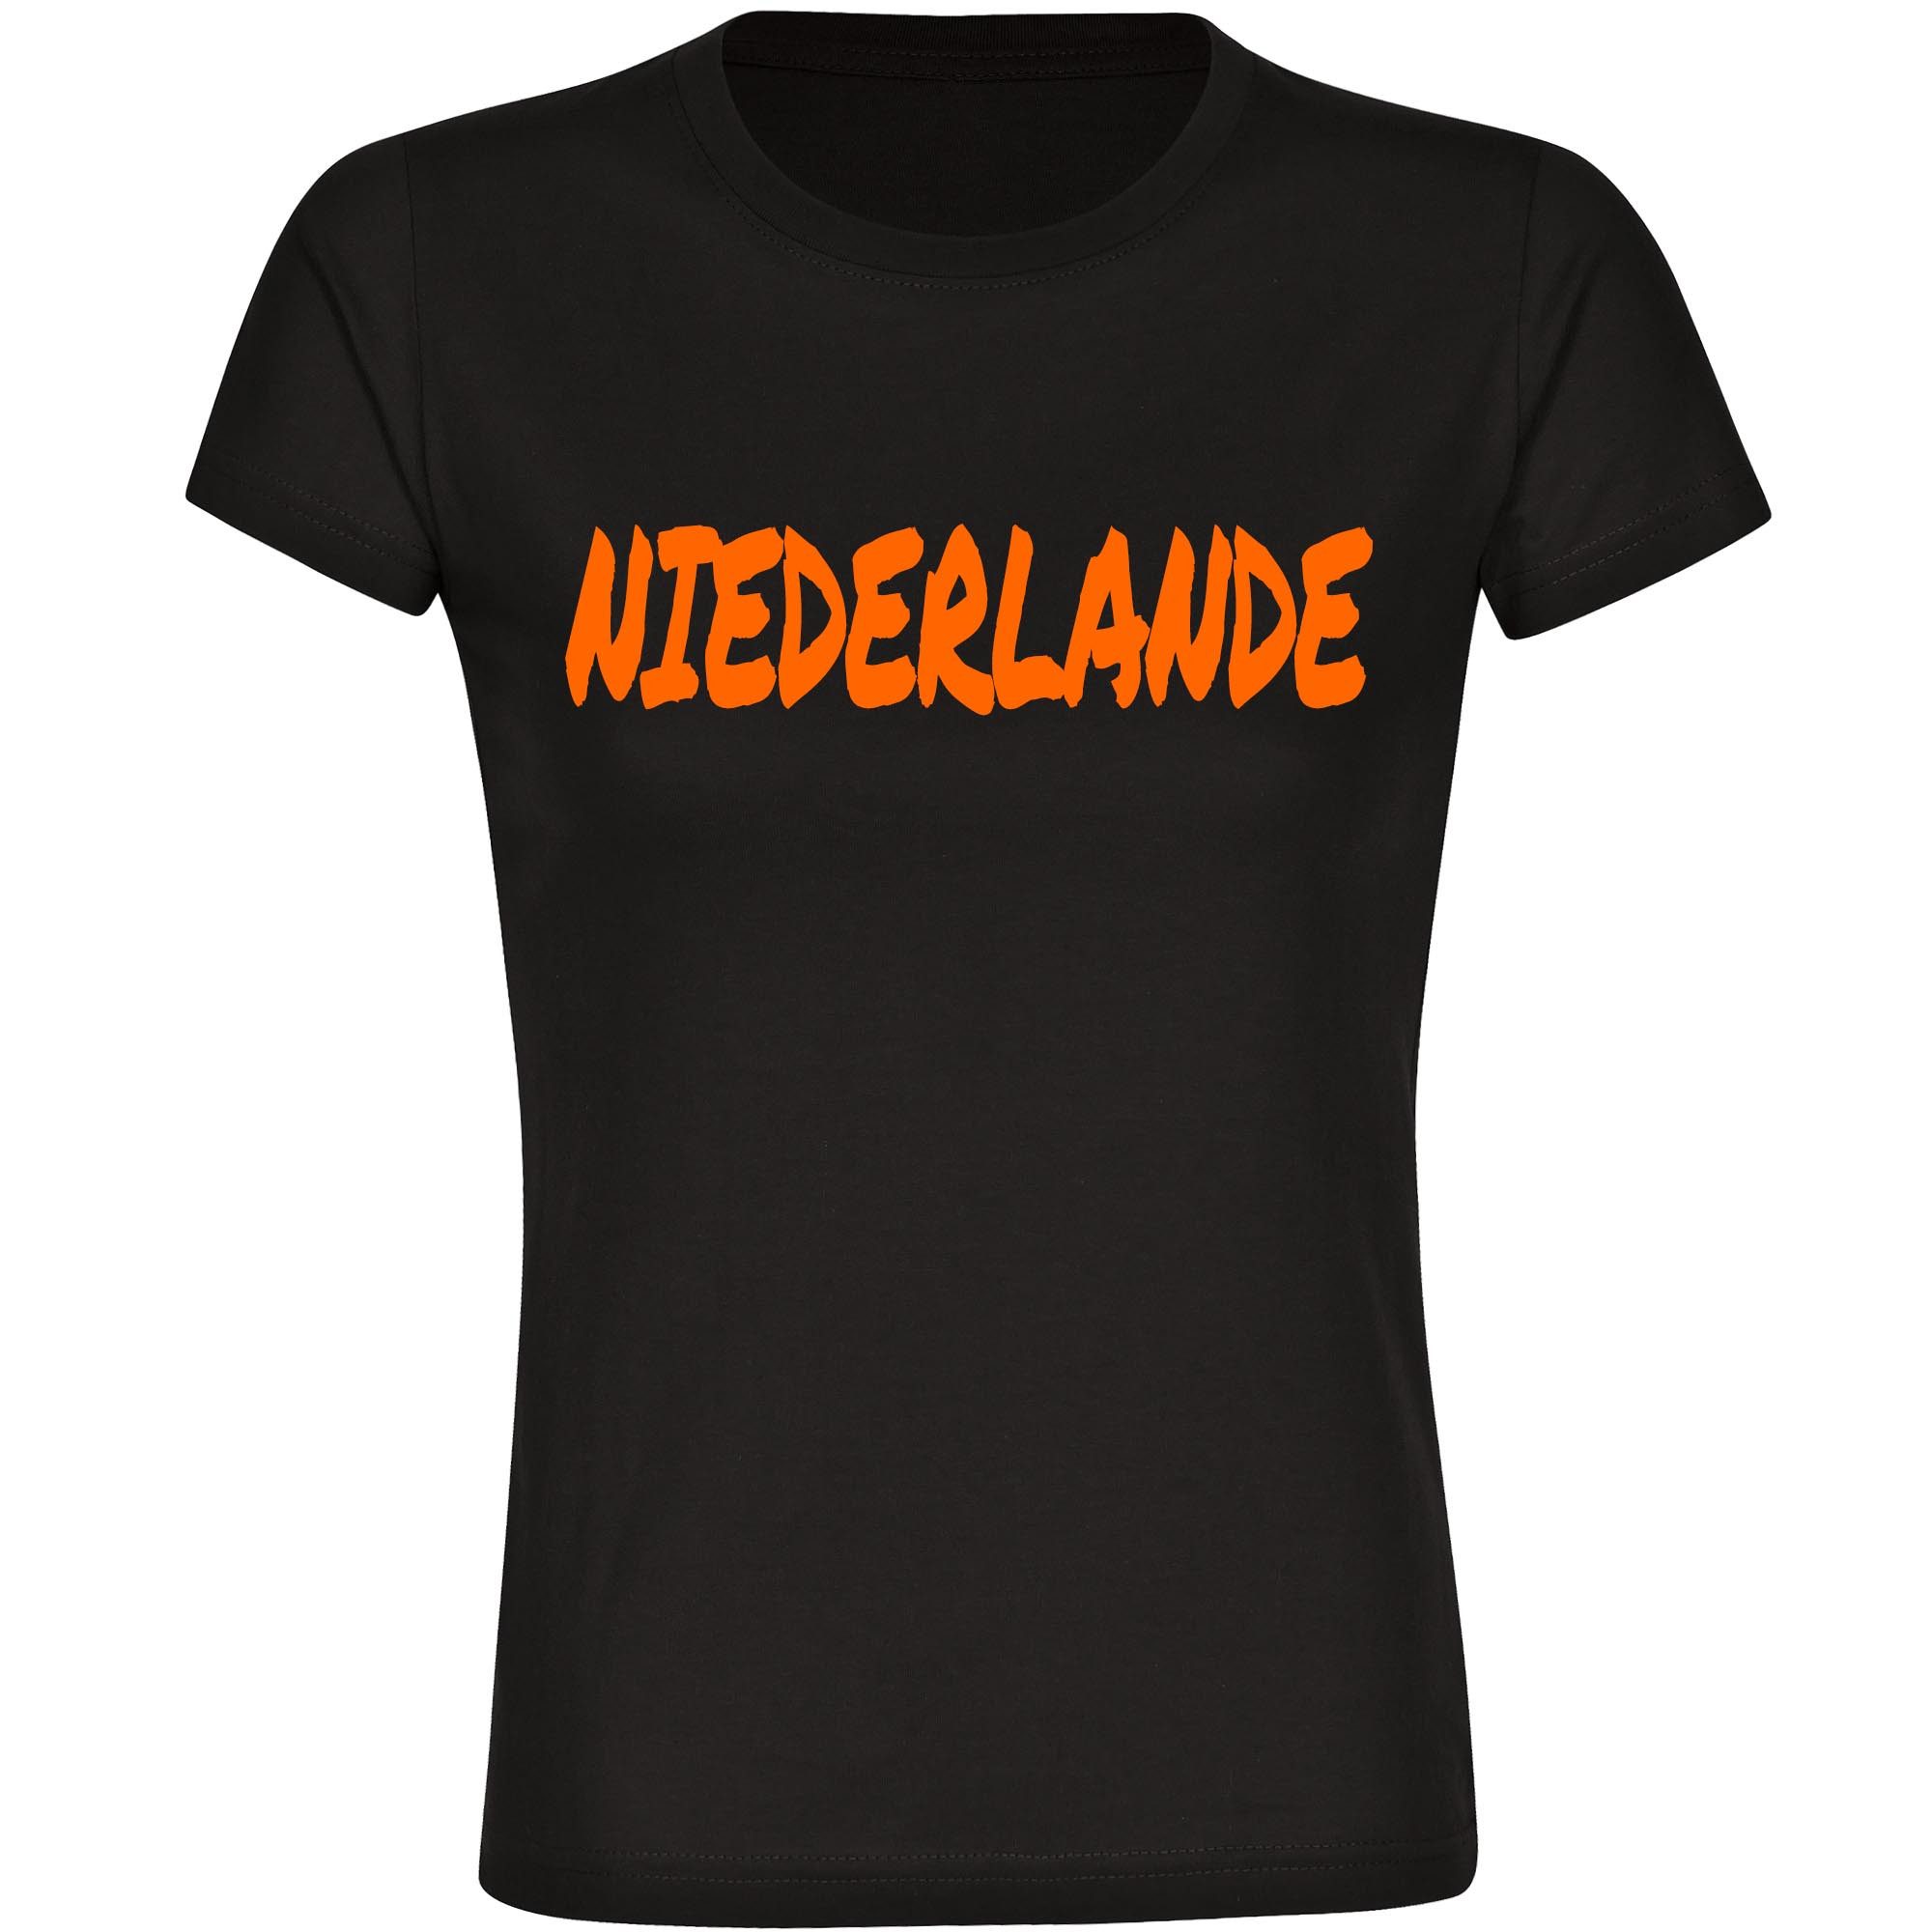 multifanshop T-Shirt Damen Niederlande - Textmarker - Frauen